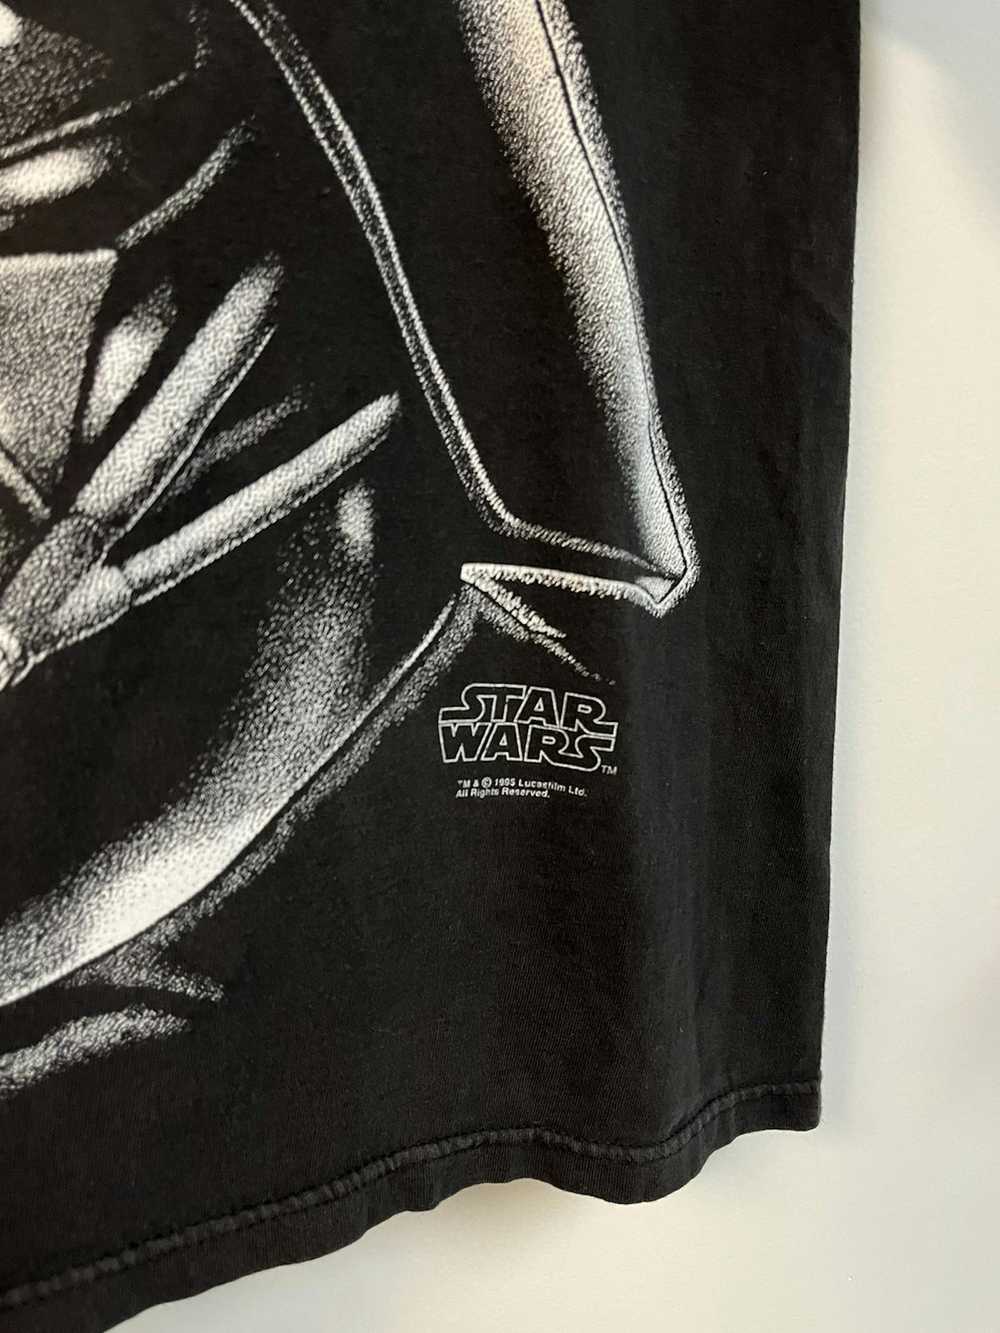 Vintage 1995 Star Wars Darth Vader - image 3